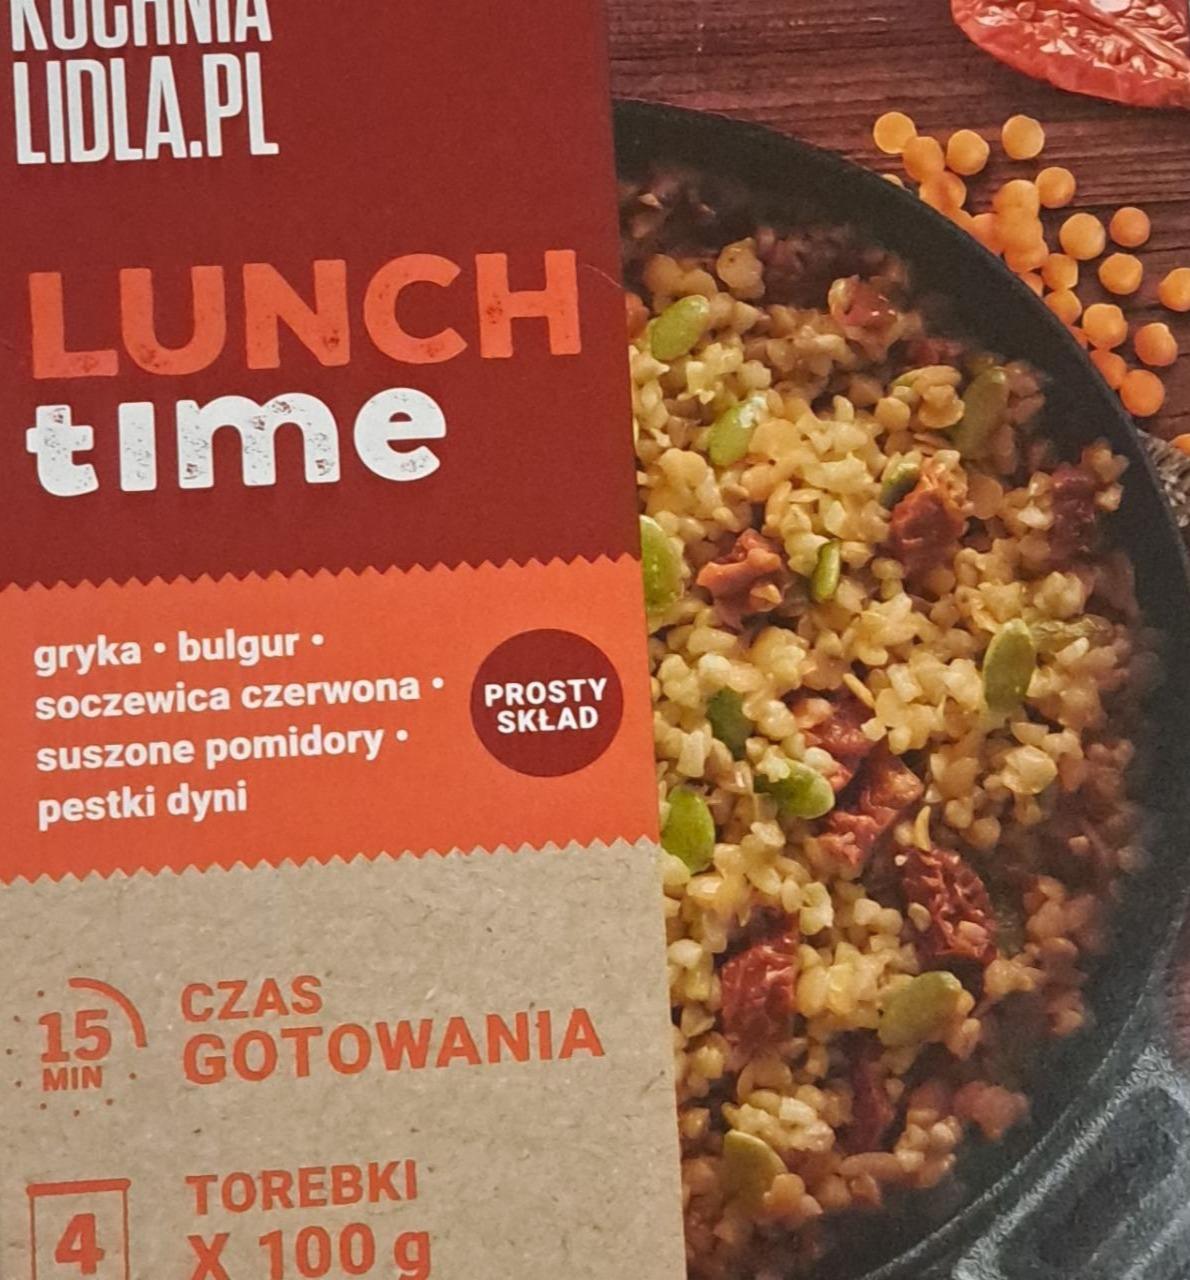 Фото - Lunch time gryka bulgur soczewica czerwona suszone pomidory pestki dyni Kuchnia Lidla.Pl